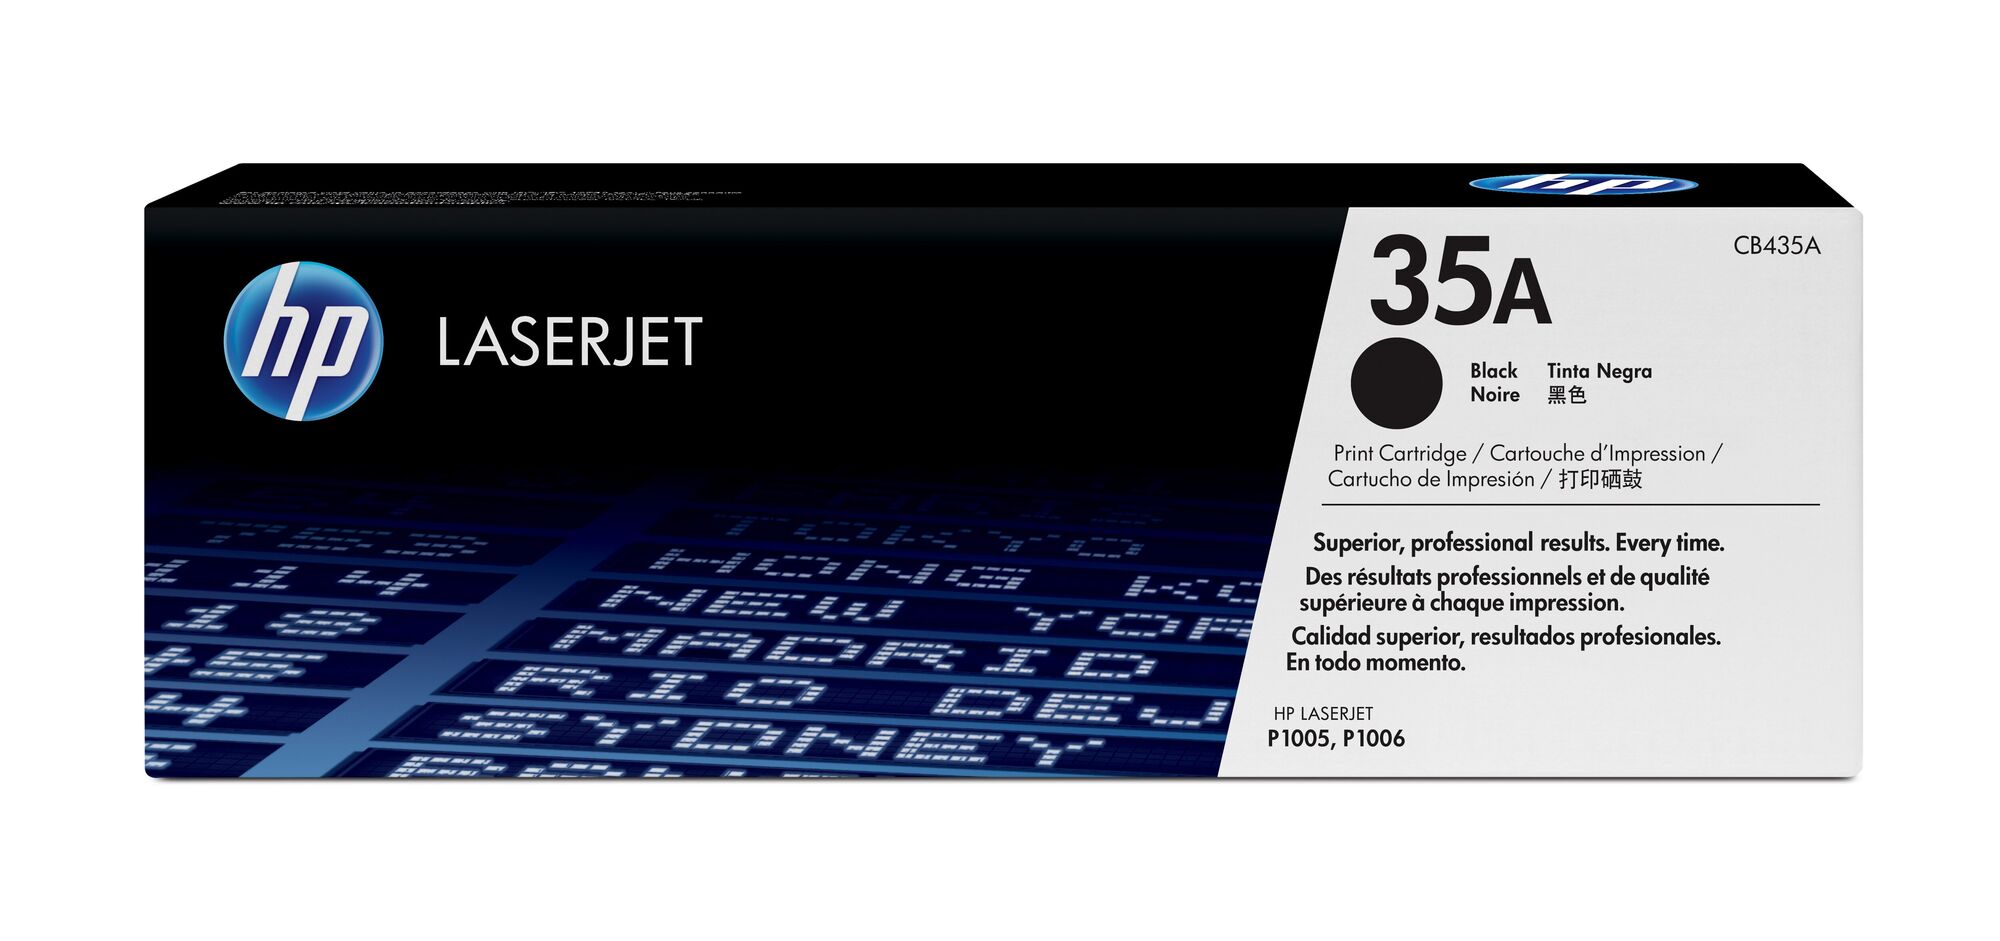 Картридж для печати HP Картридж HP 35A CB435A вид печати лазерный, цвет Черный, емкость